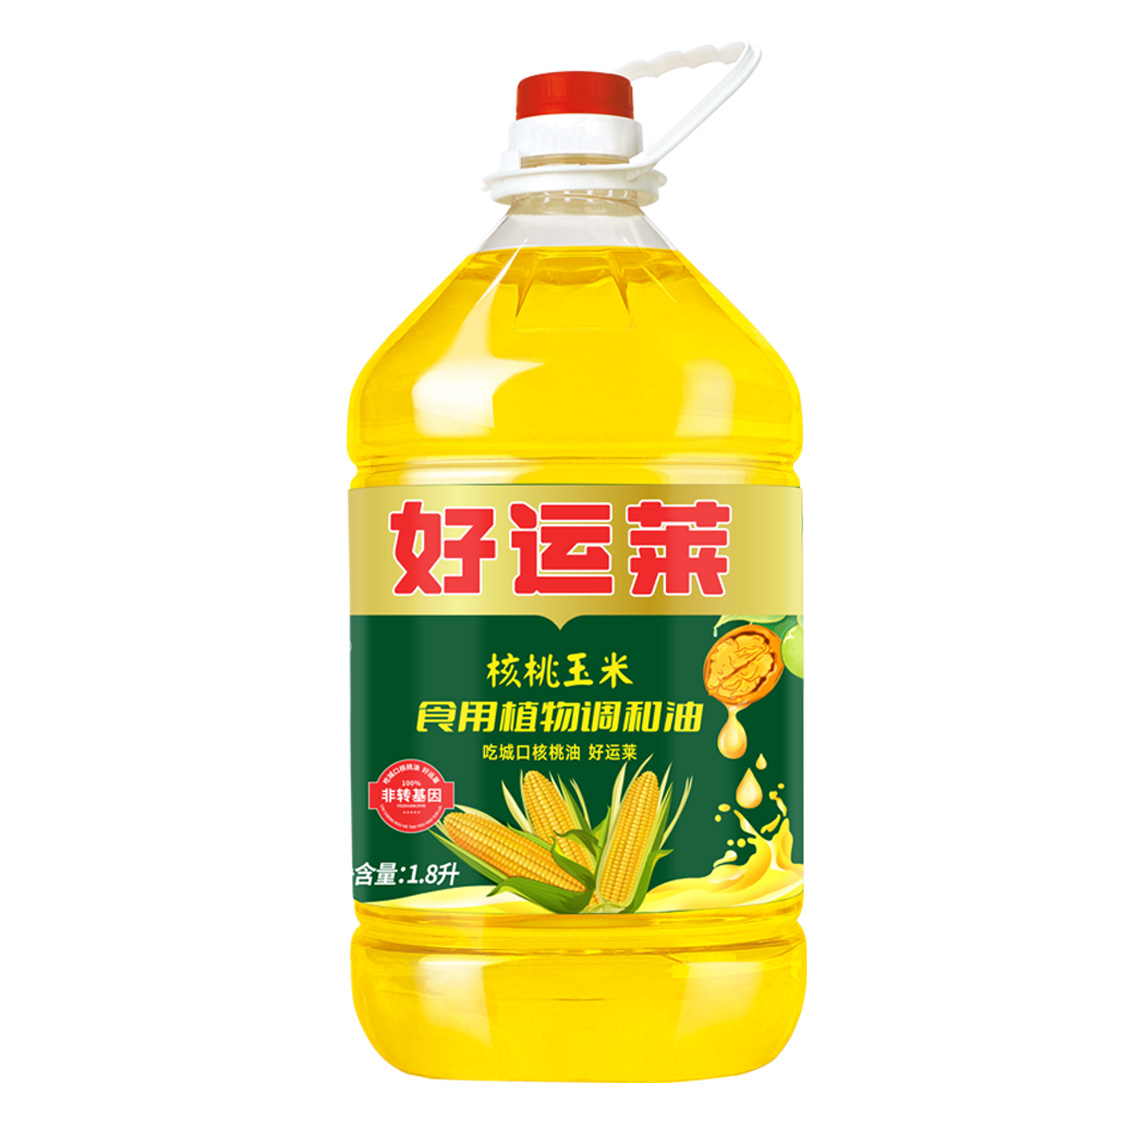 清香核桃玉米油1.8L